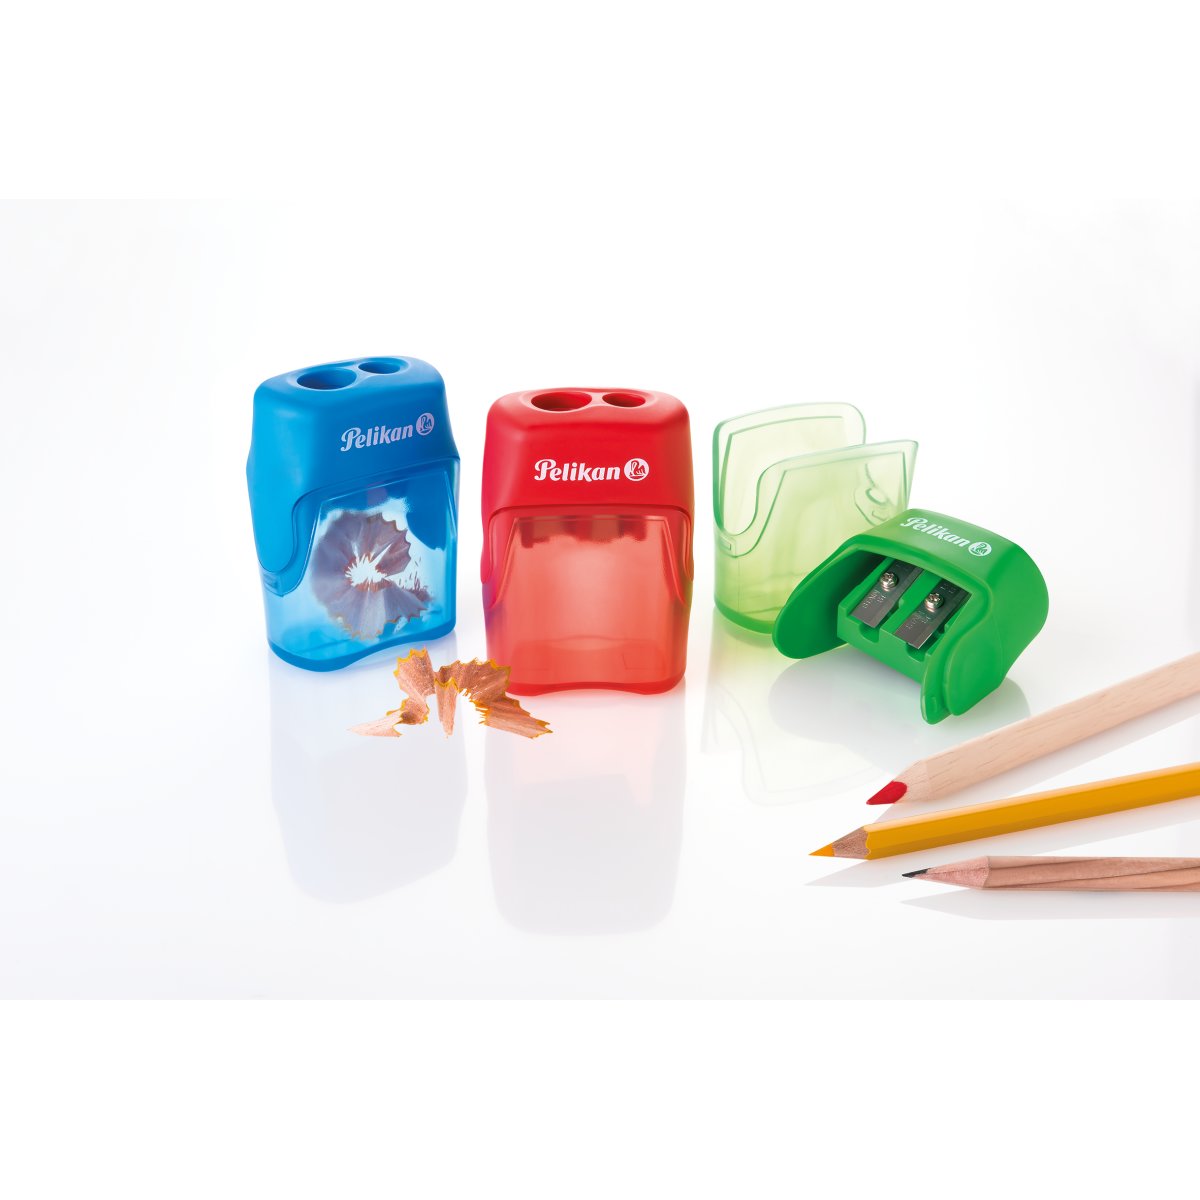 Ascuțitoare V-Blade plastic dublă, cu container, diverse culori, 1 bucată/ blister, Pelikan